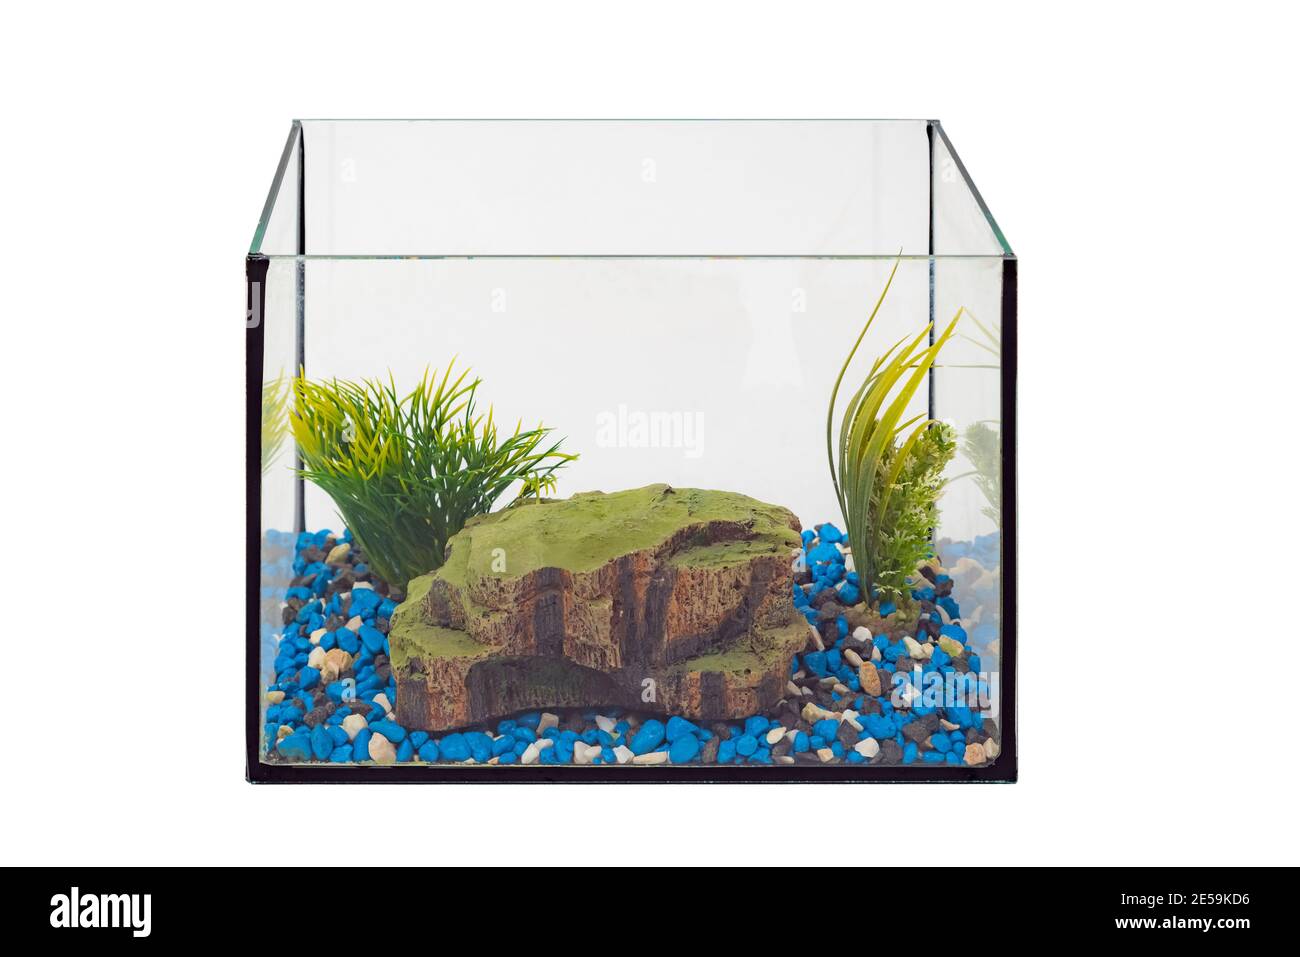 Aquarium ohne Wasser und Fische auf weißem Hintergrund. Leere  Fischschüssel. Niemand Stockfotografie - Alamy